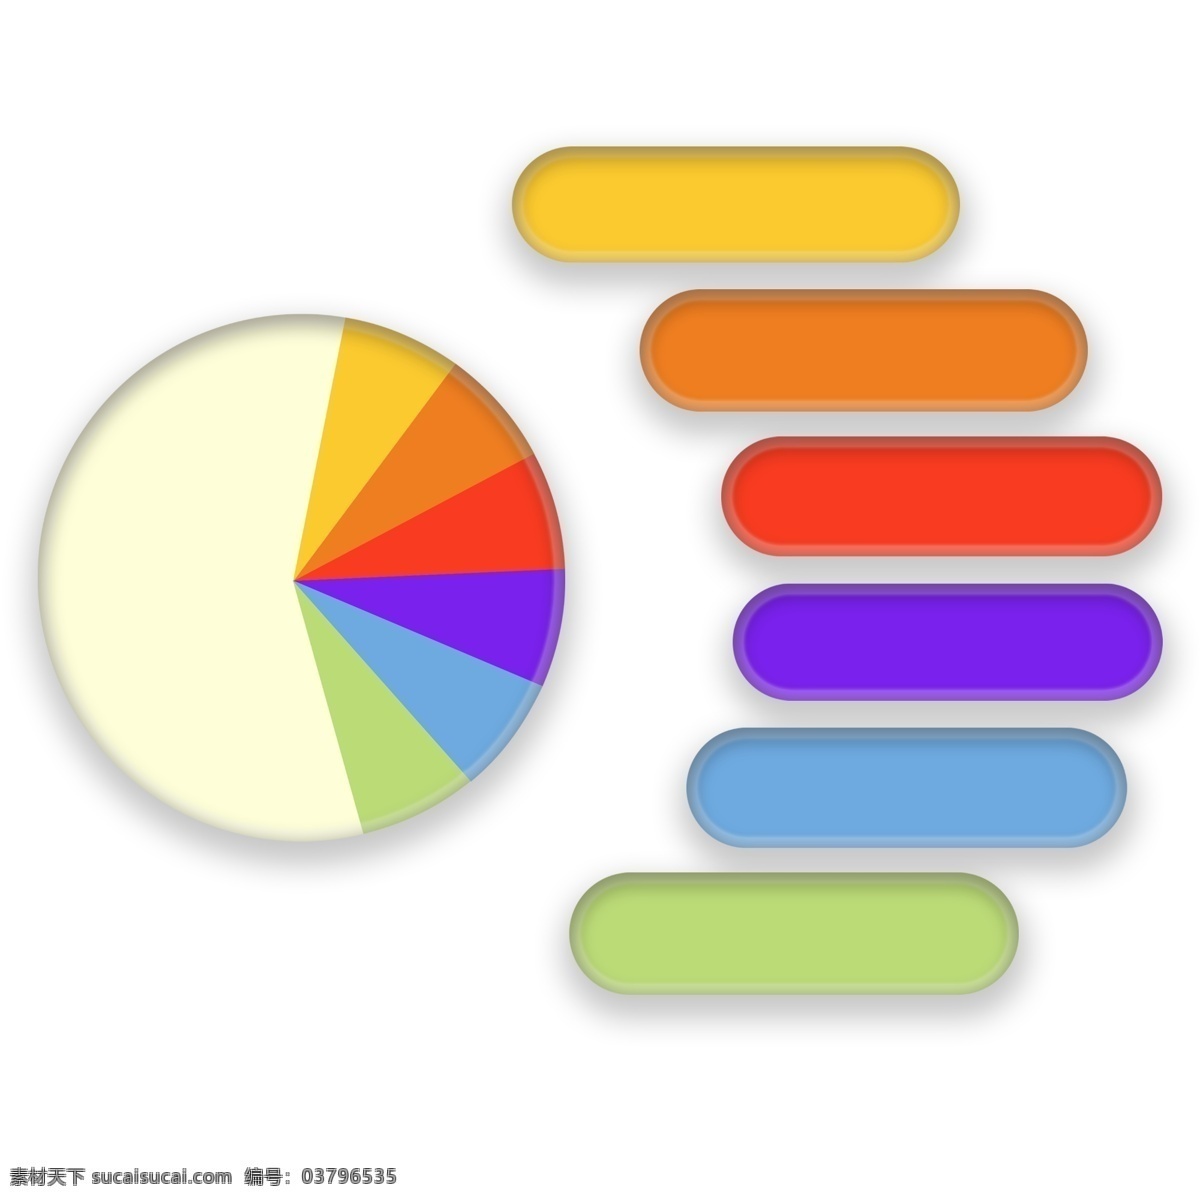 圆形 图表 市场分析 圆形图表 圆饼图 彩色 椭圆形框框 信息图表 分析图表 演示文稿